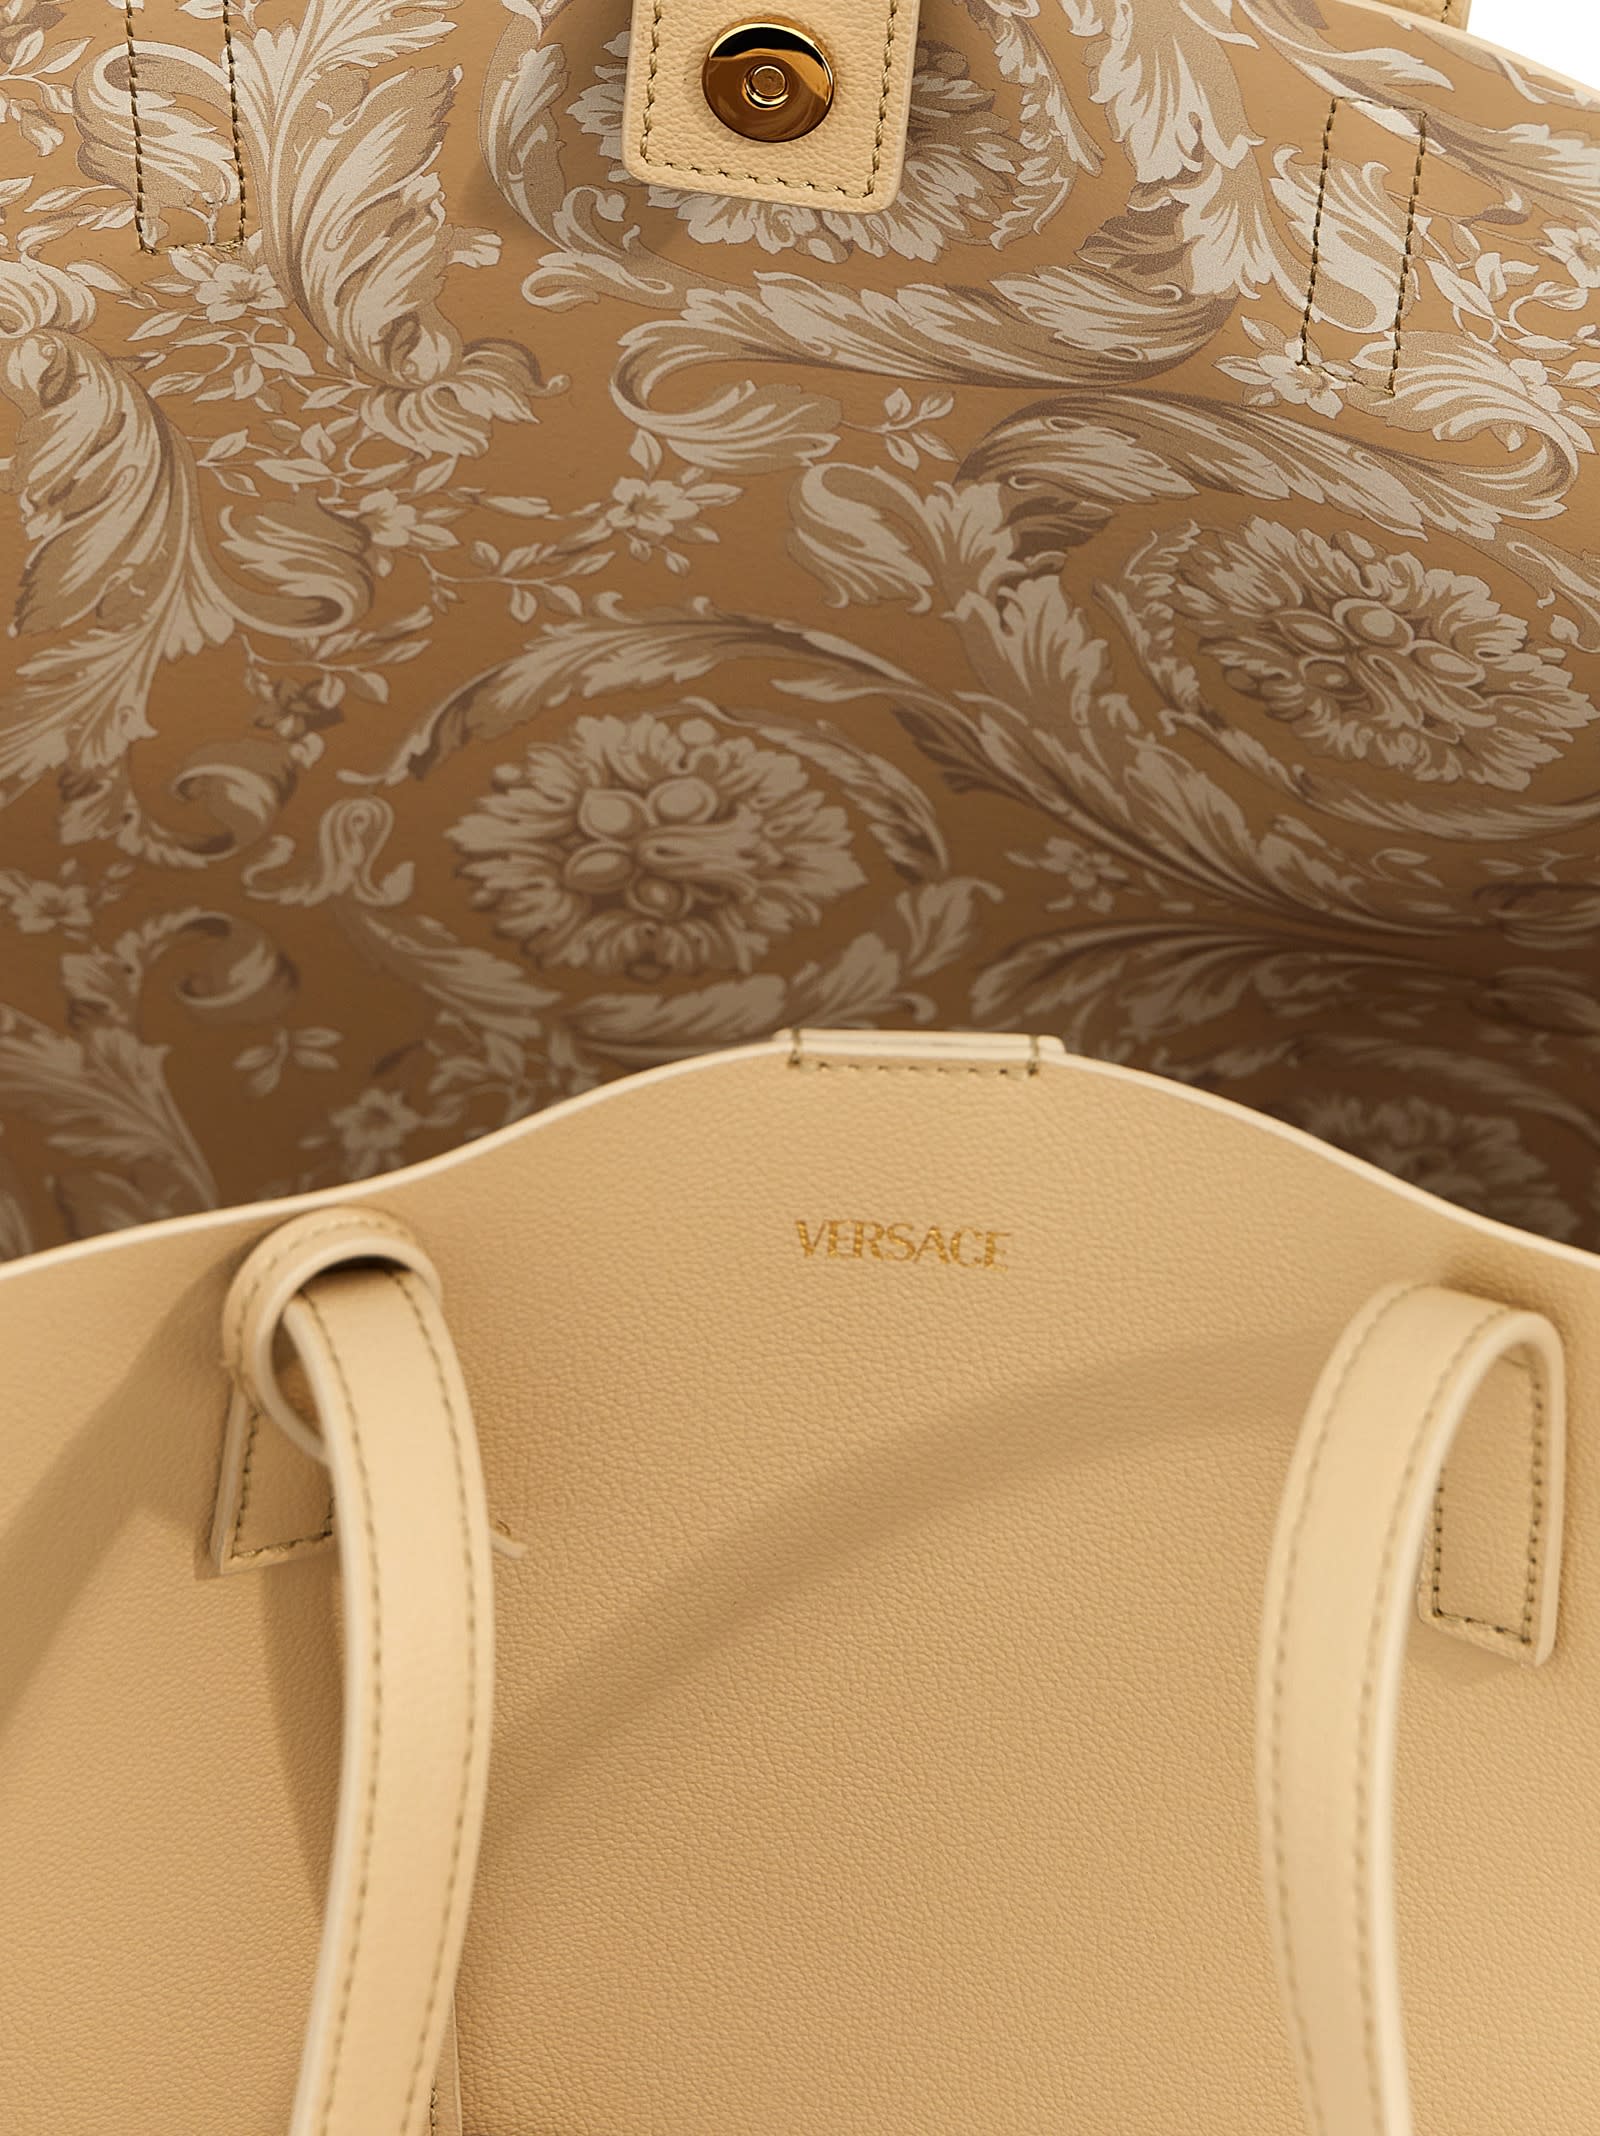 Shop Versace Virtus Shopping Bag In Black